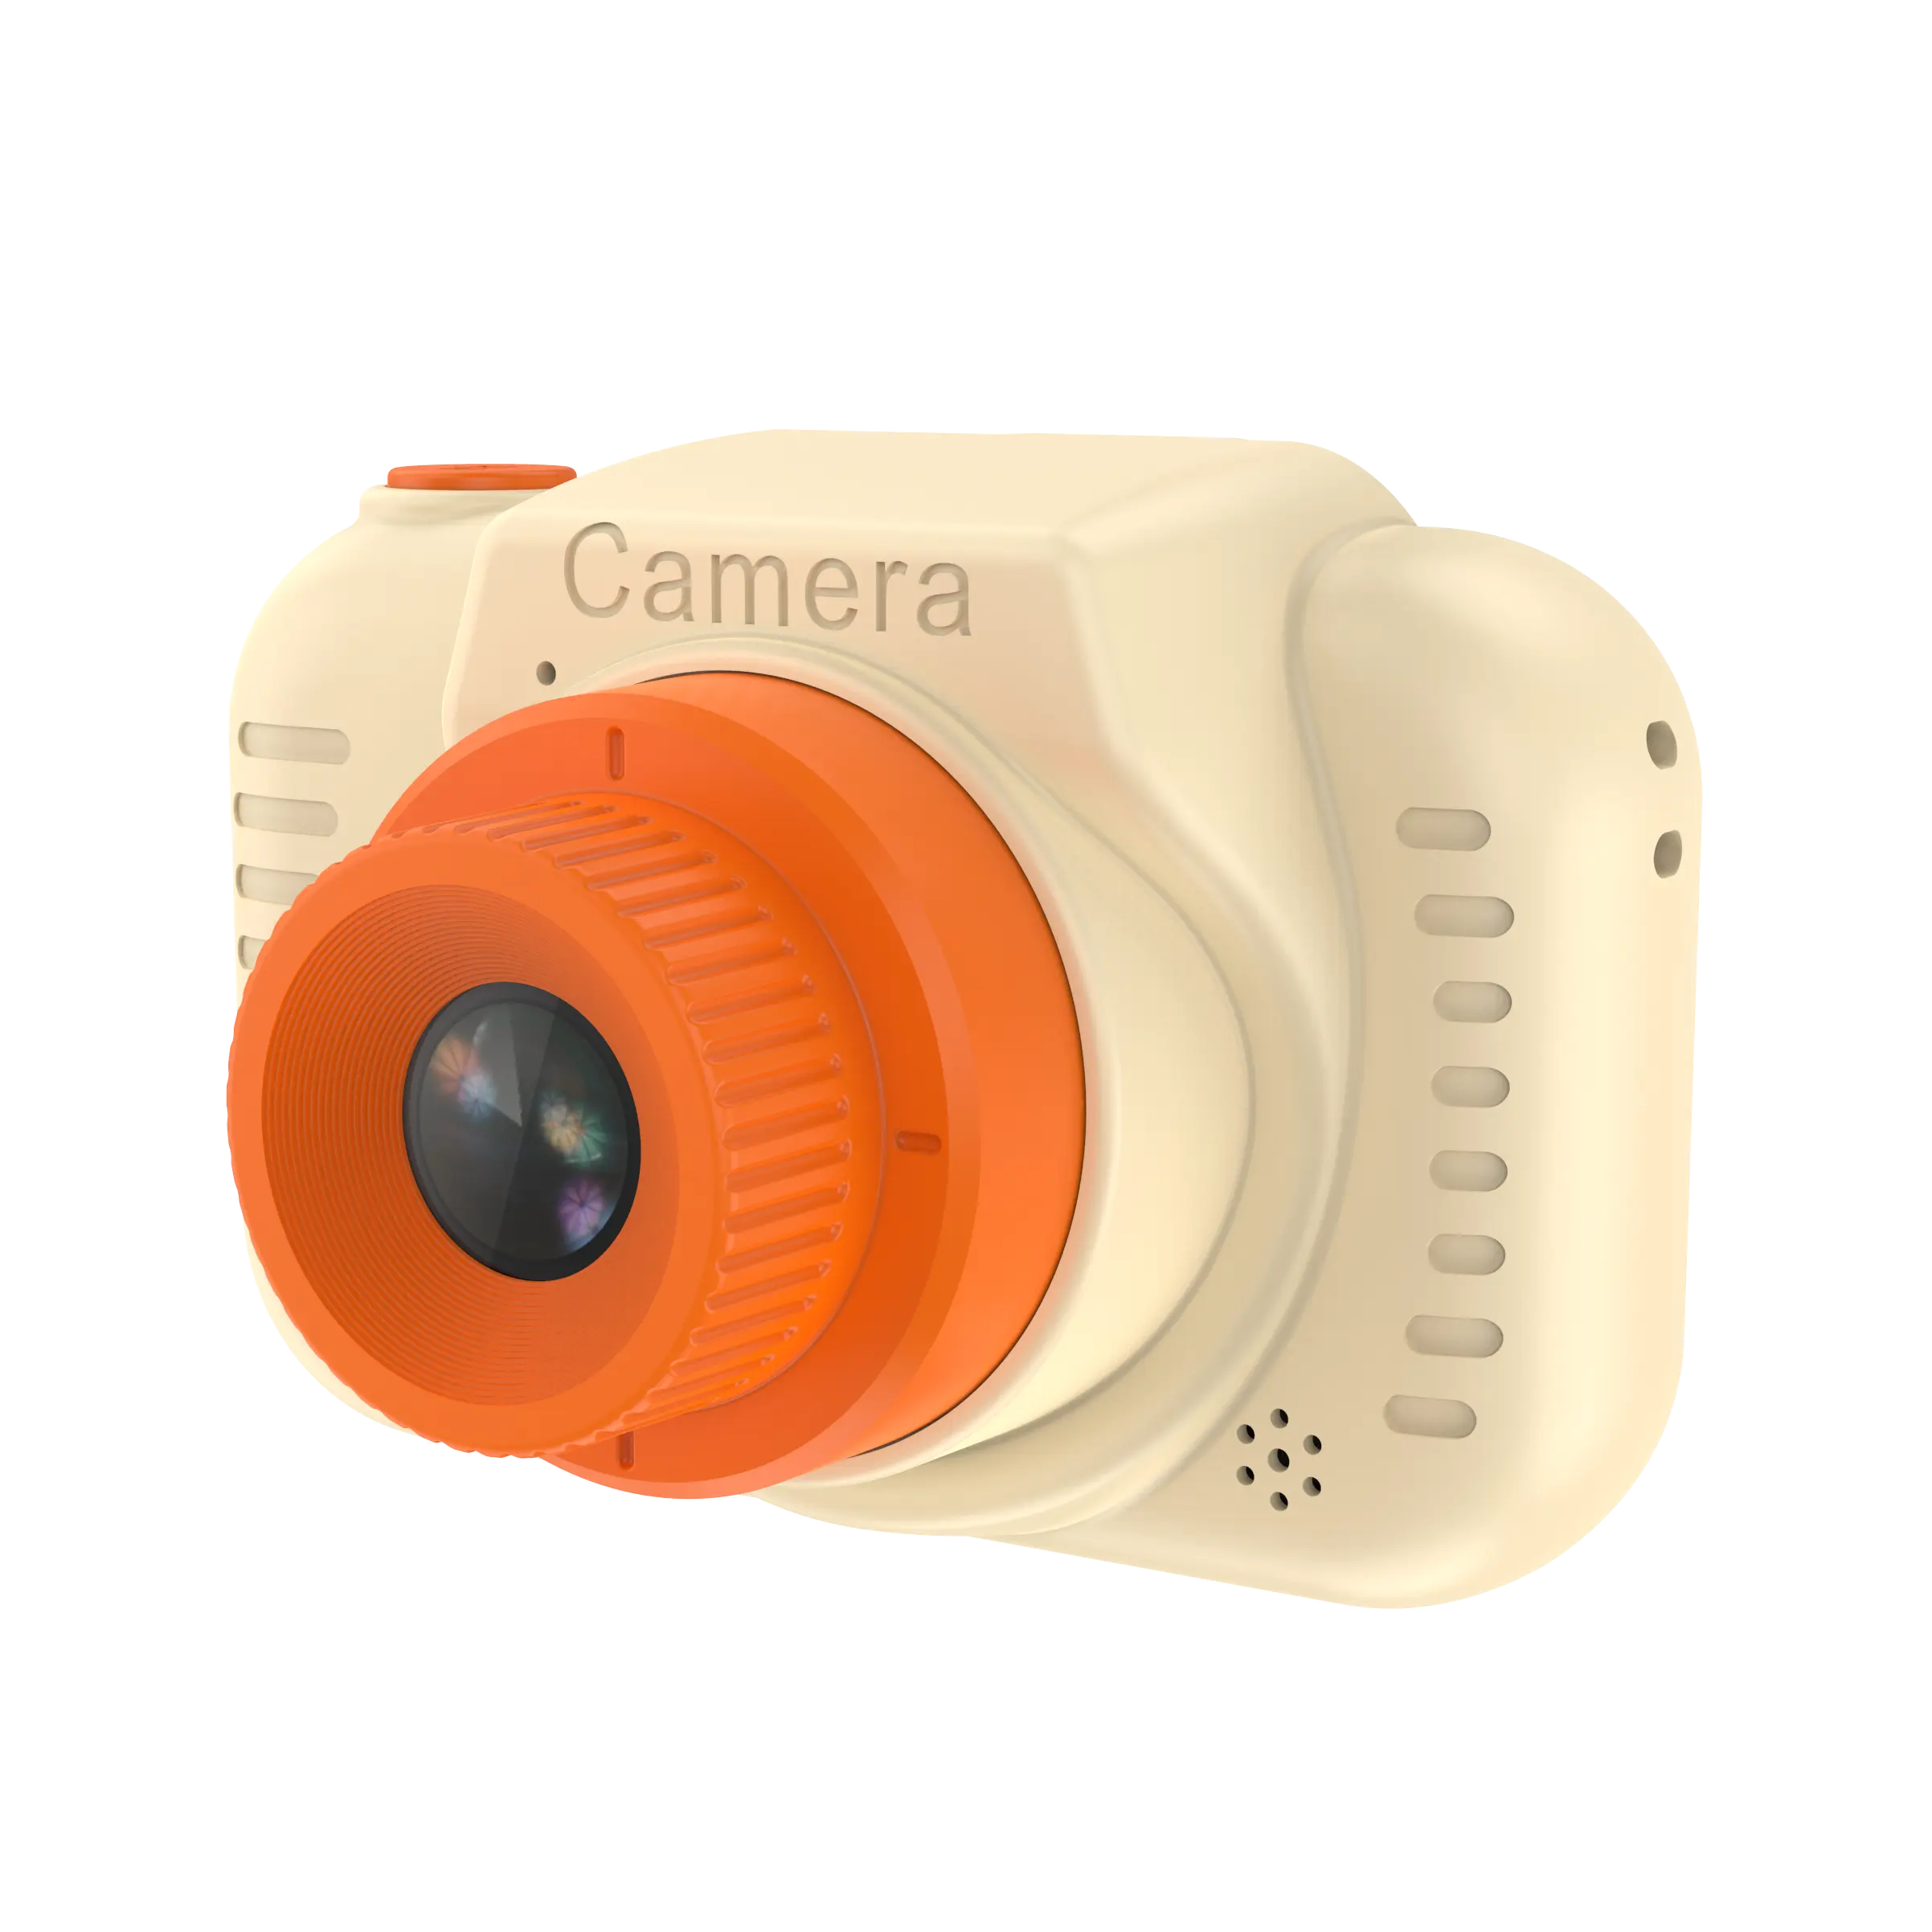 มินิกล้องของเล่นกล้องถ่ายภาพดิจิตอลของเล่นเด็กการศึกษาการถ่ายภาพของขวัญของเล่นเด็กวัยหัดเดินกล้อง 48MP